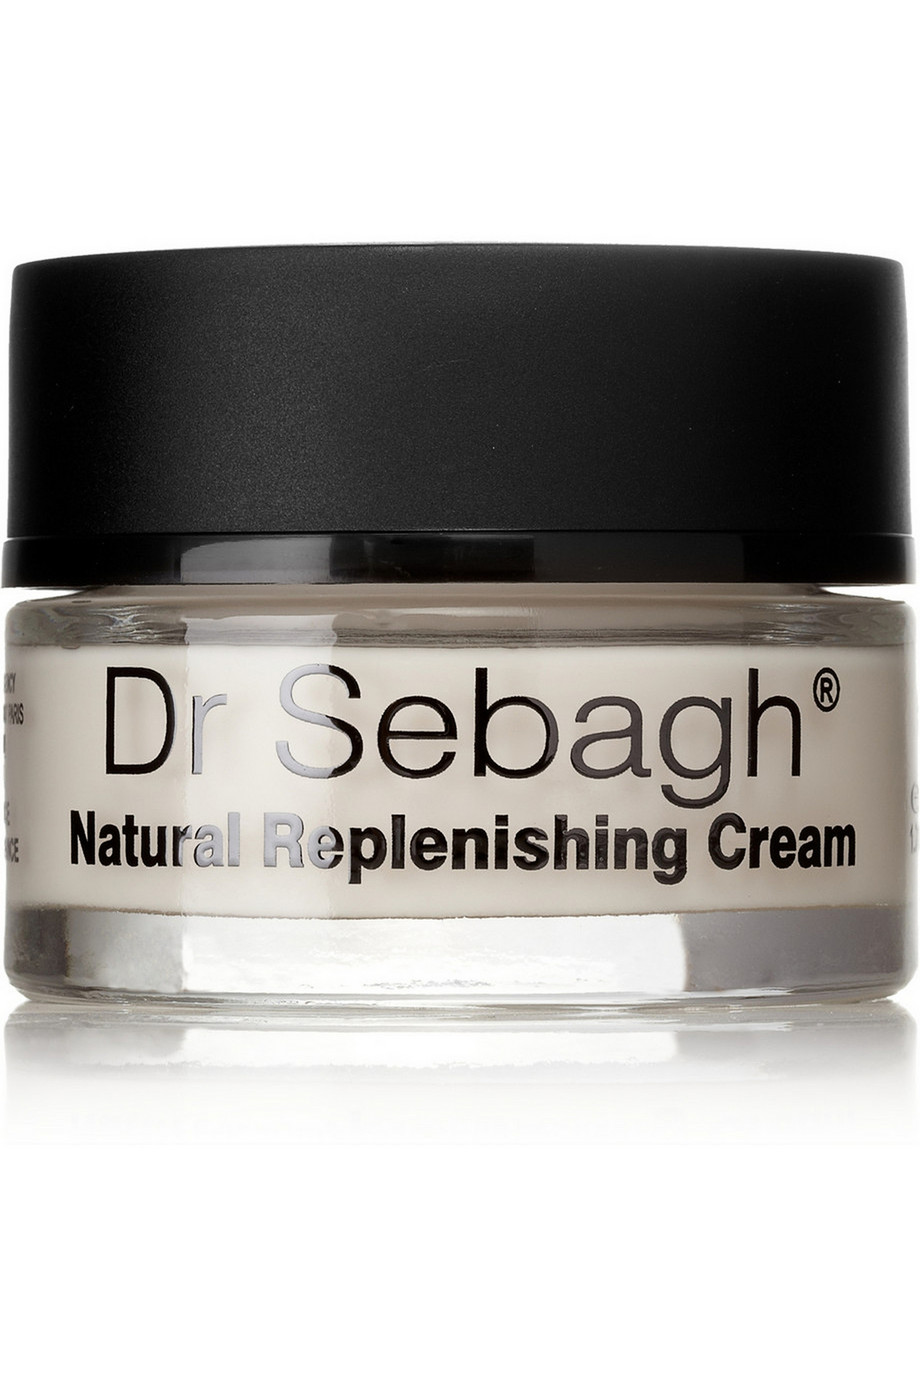 Dr Sebagh Natural Replenishing Cream 50ml - интернет-магазин профессиональной косметики Spadream, изображение 17717